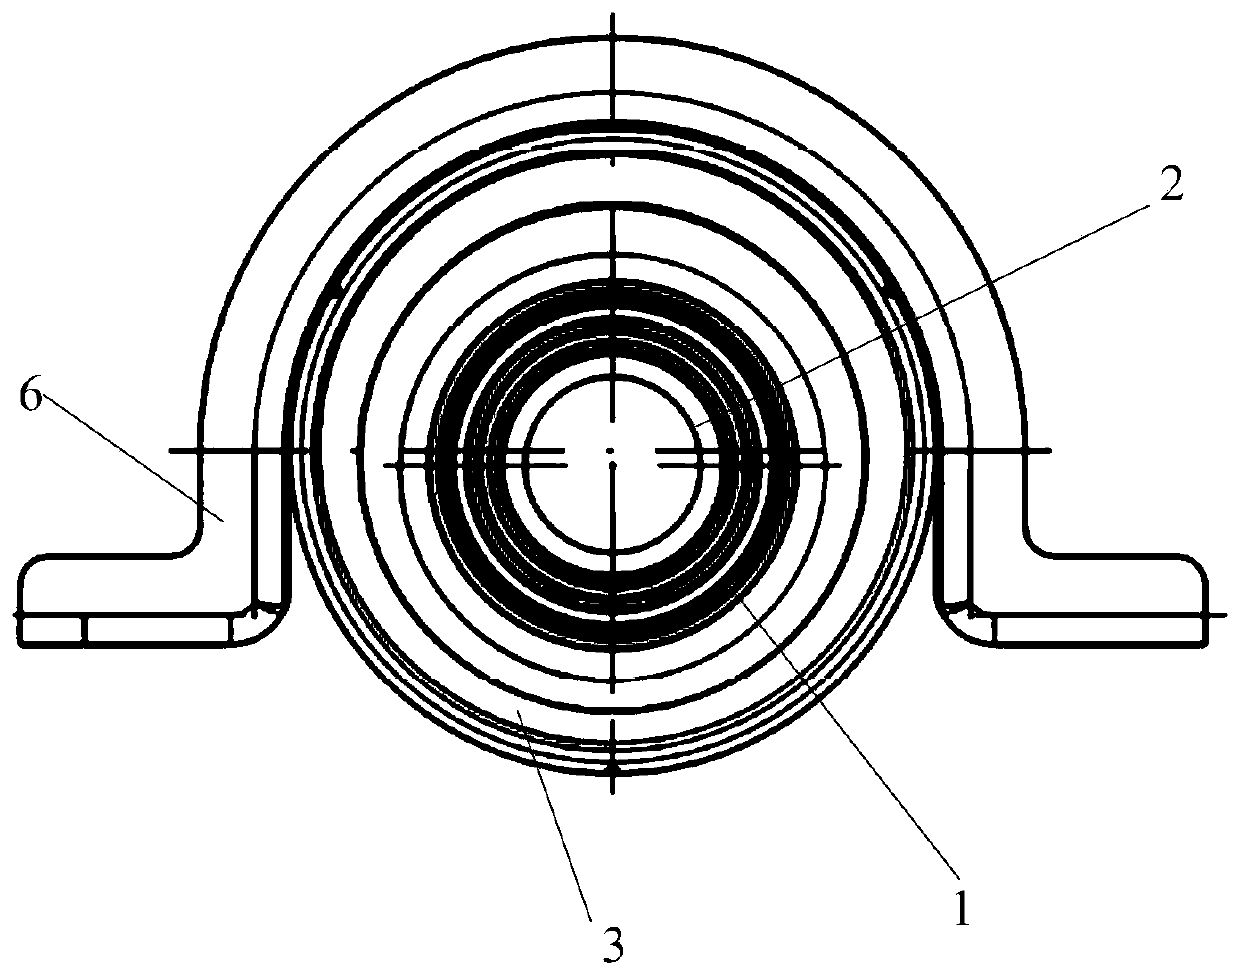 Novel transmission shaft support structure